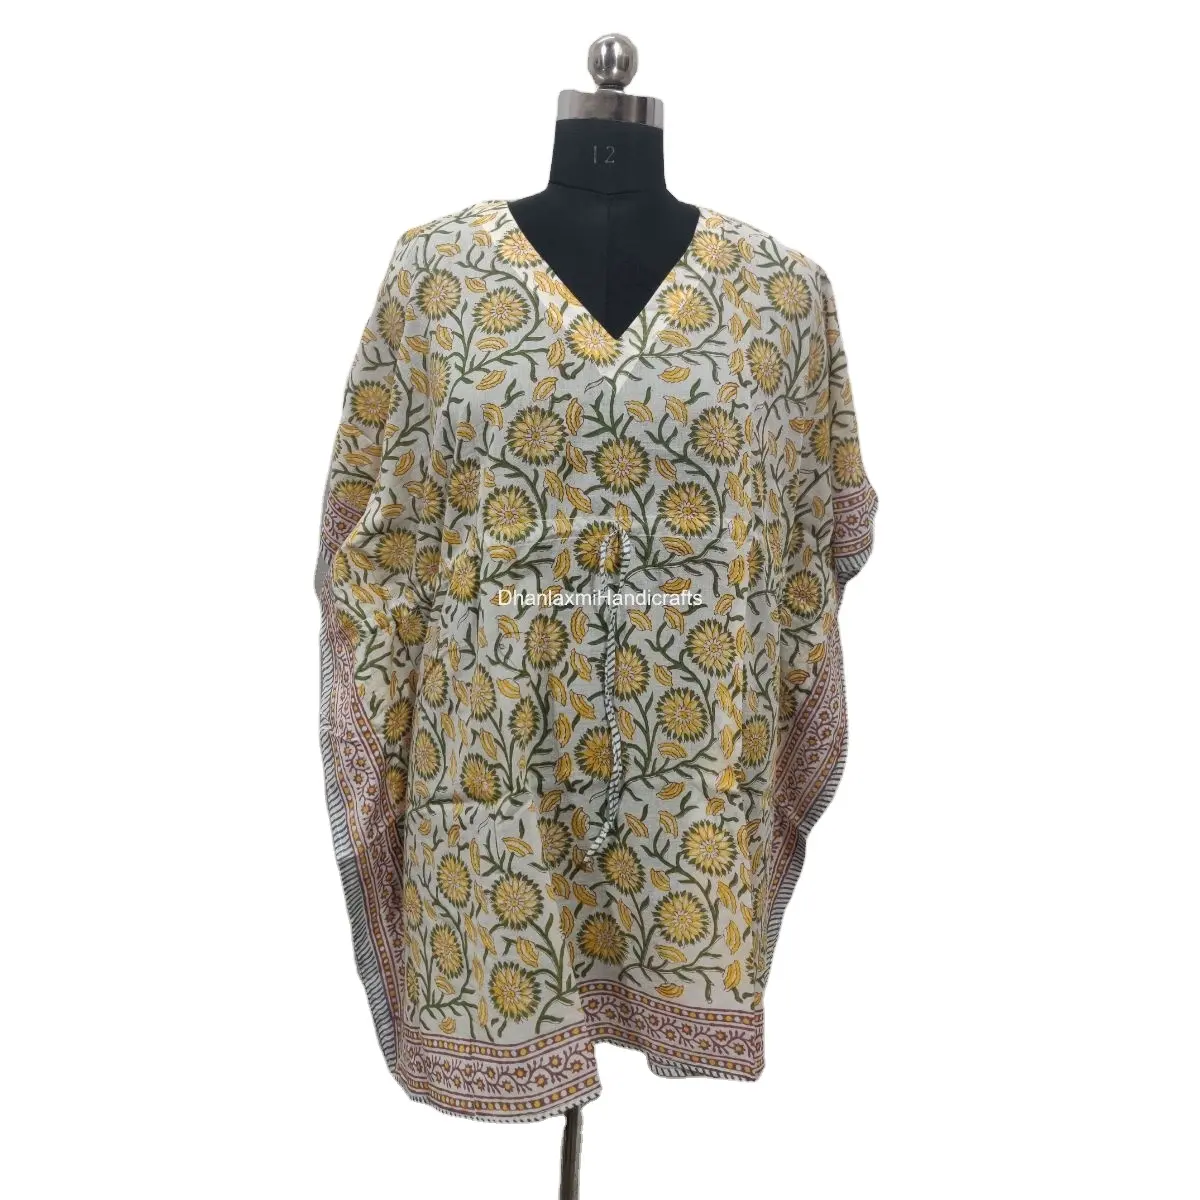 Пляжное платье-халат, 1 шт., короткий кафтан, хлопковая ткань, богемный стиль, бохо, хиппи стиль, туника, кимоно, кафтан